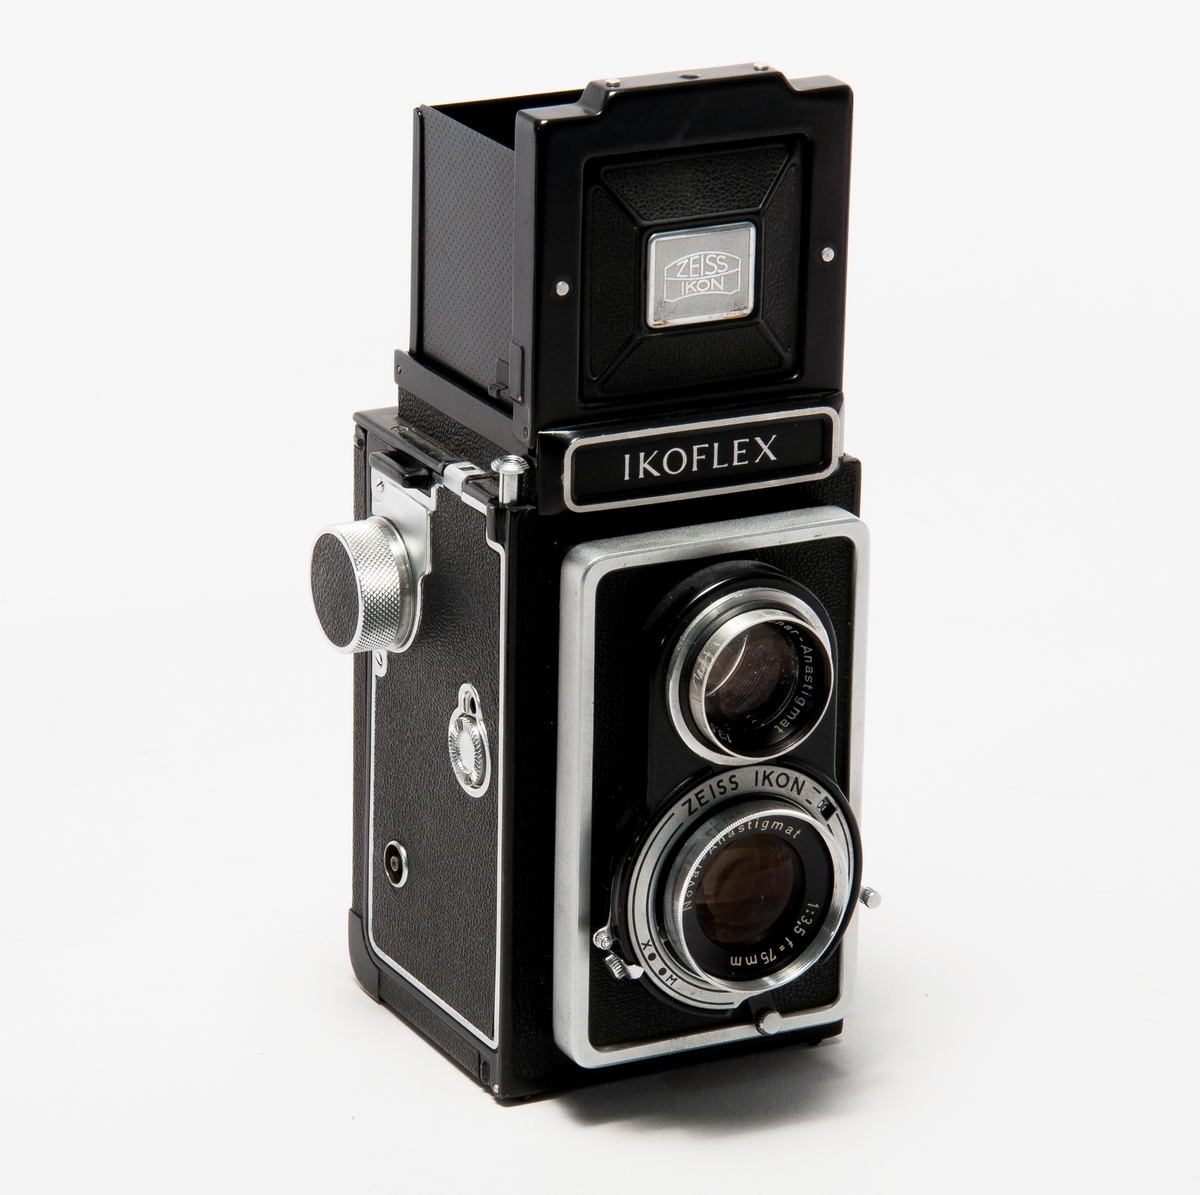 Tvåögd spegelreflexkamera för rullfilm i 120-format, med läderfodral. 
Optik Novar-Anastigmat 1:3,5 f=75 mm. 

Märklapp i kameran: Garantibevis från Hasselblads fotografiska AB, gäller till 1/2 1959.